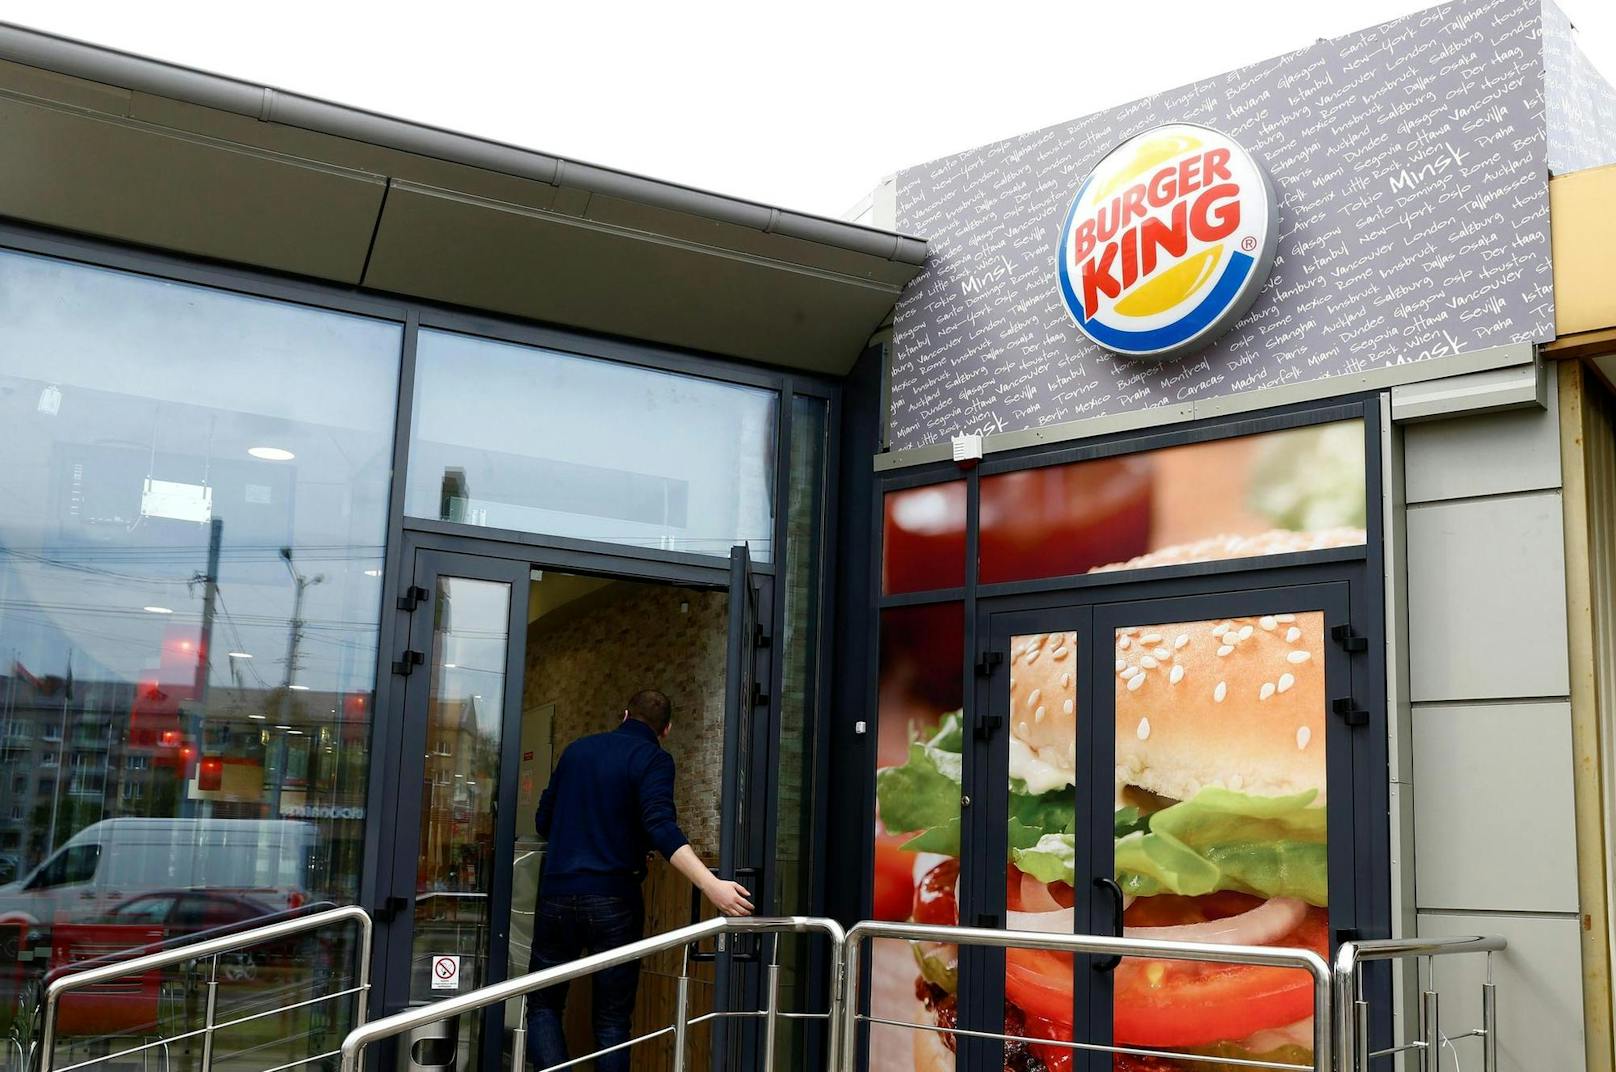 Für die Aktion bekommt Burger King viel Lob von der Twitter-Community.